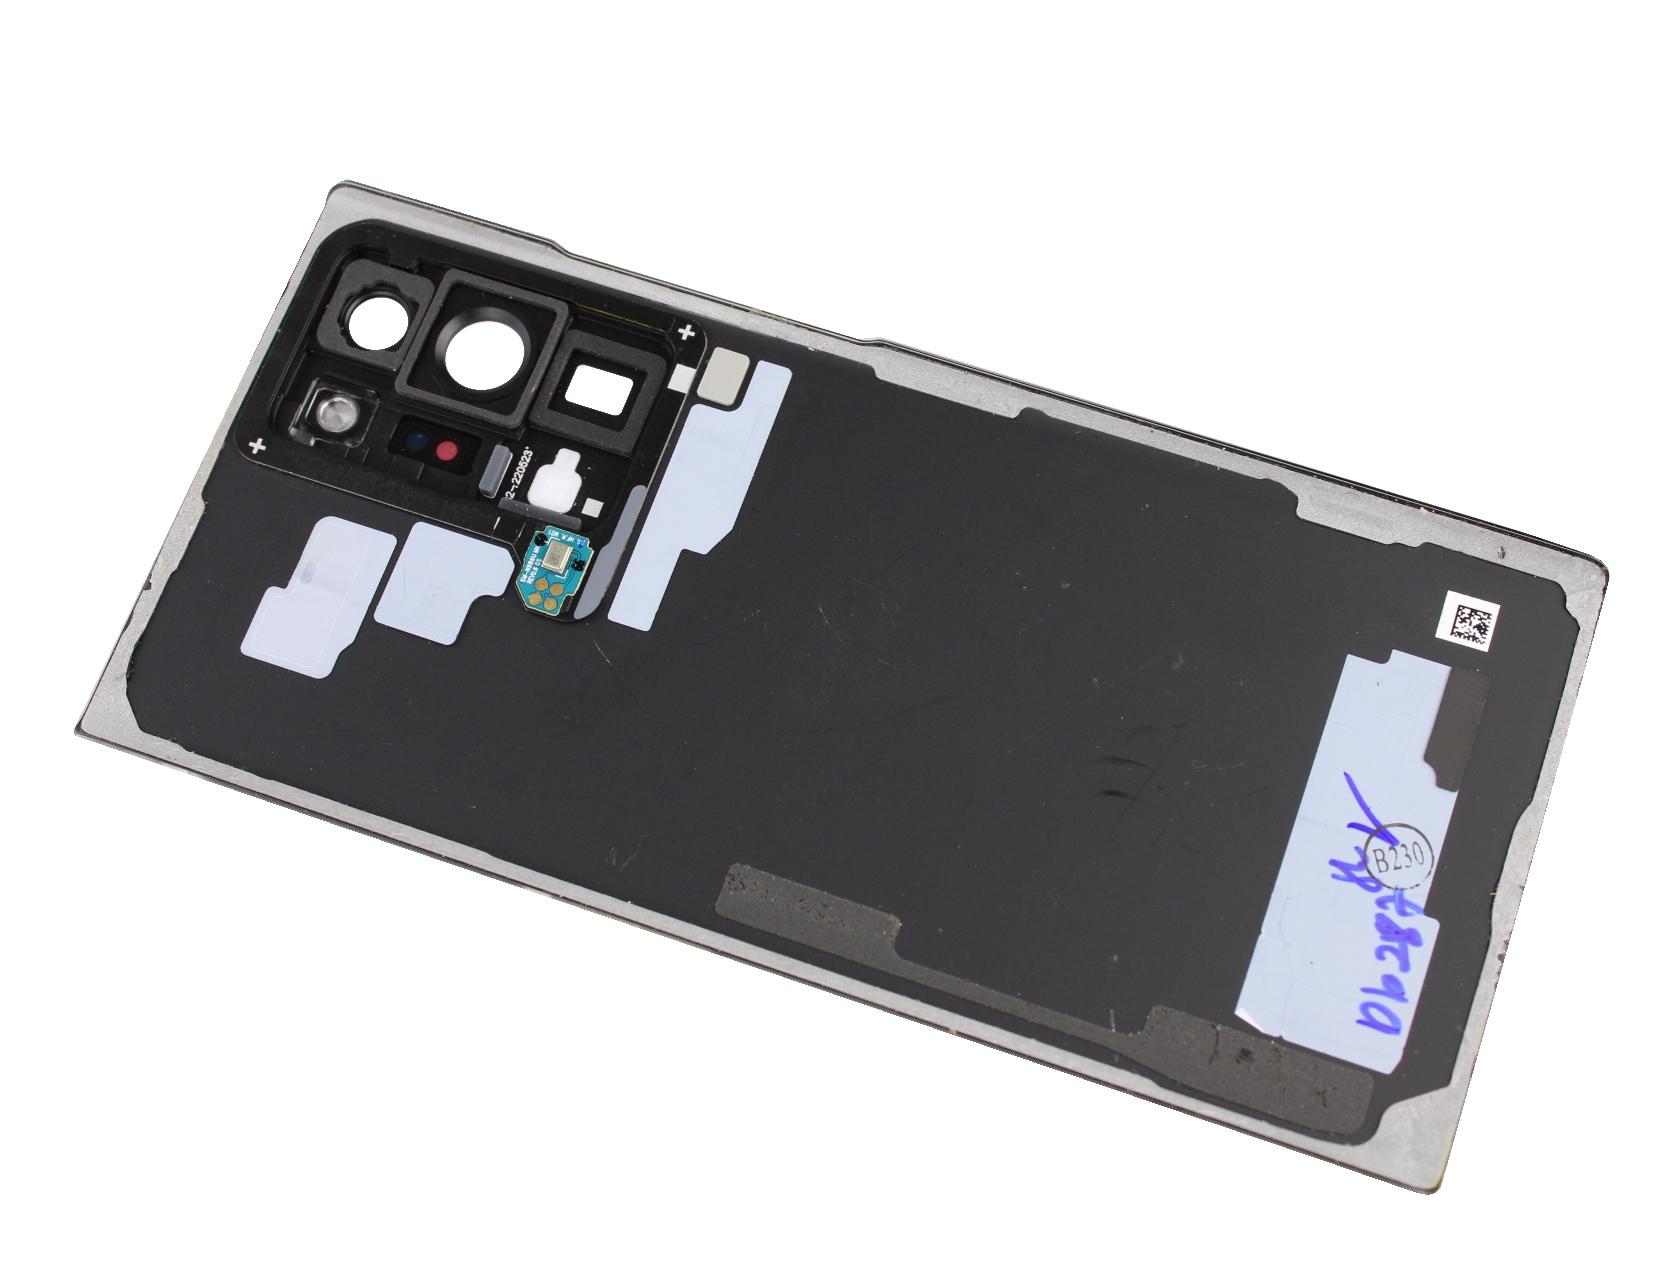 Originál kryt baterie Samsung Galaxy Note 20 Ultra 5G SM-N986 / SM- N985 mystic černý demontovaný díl